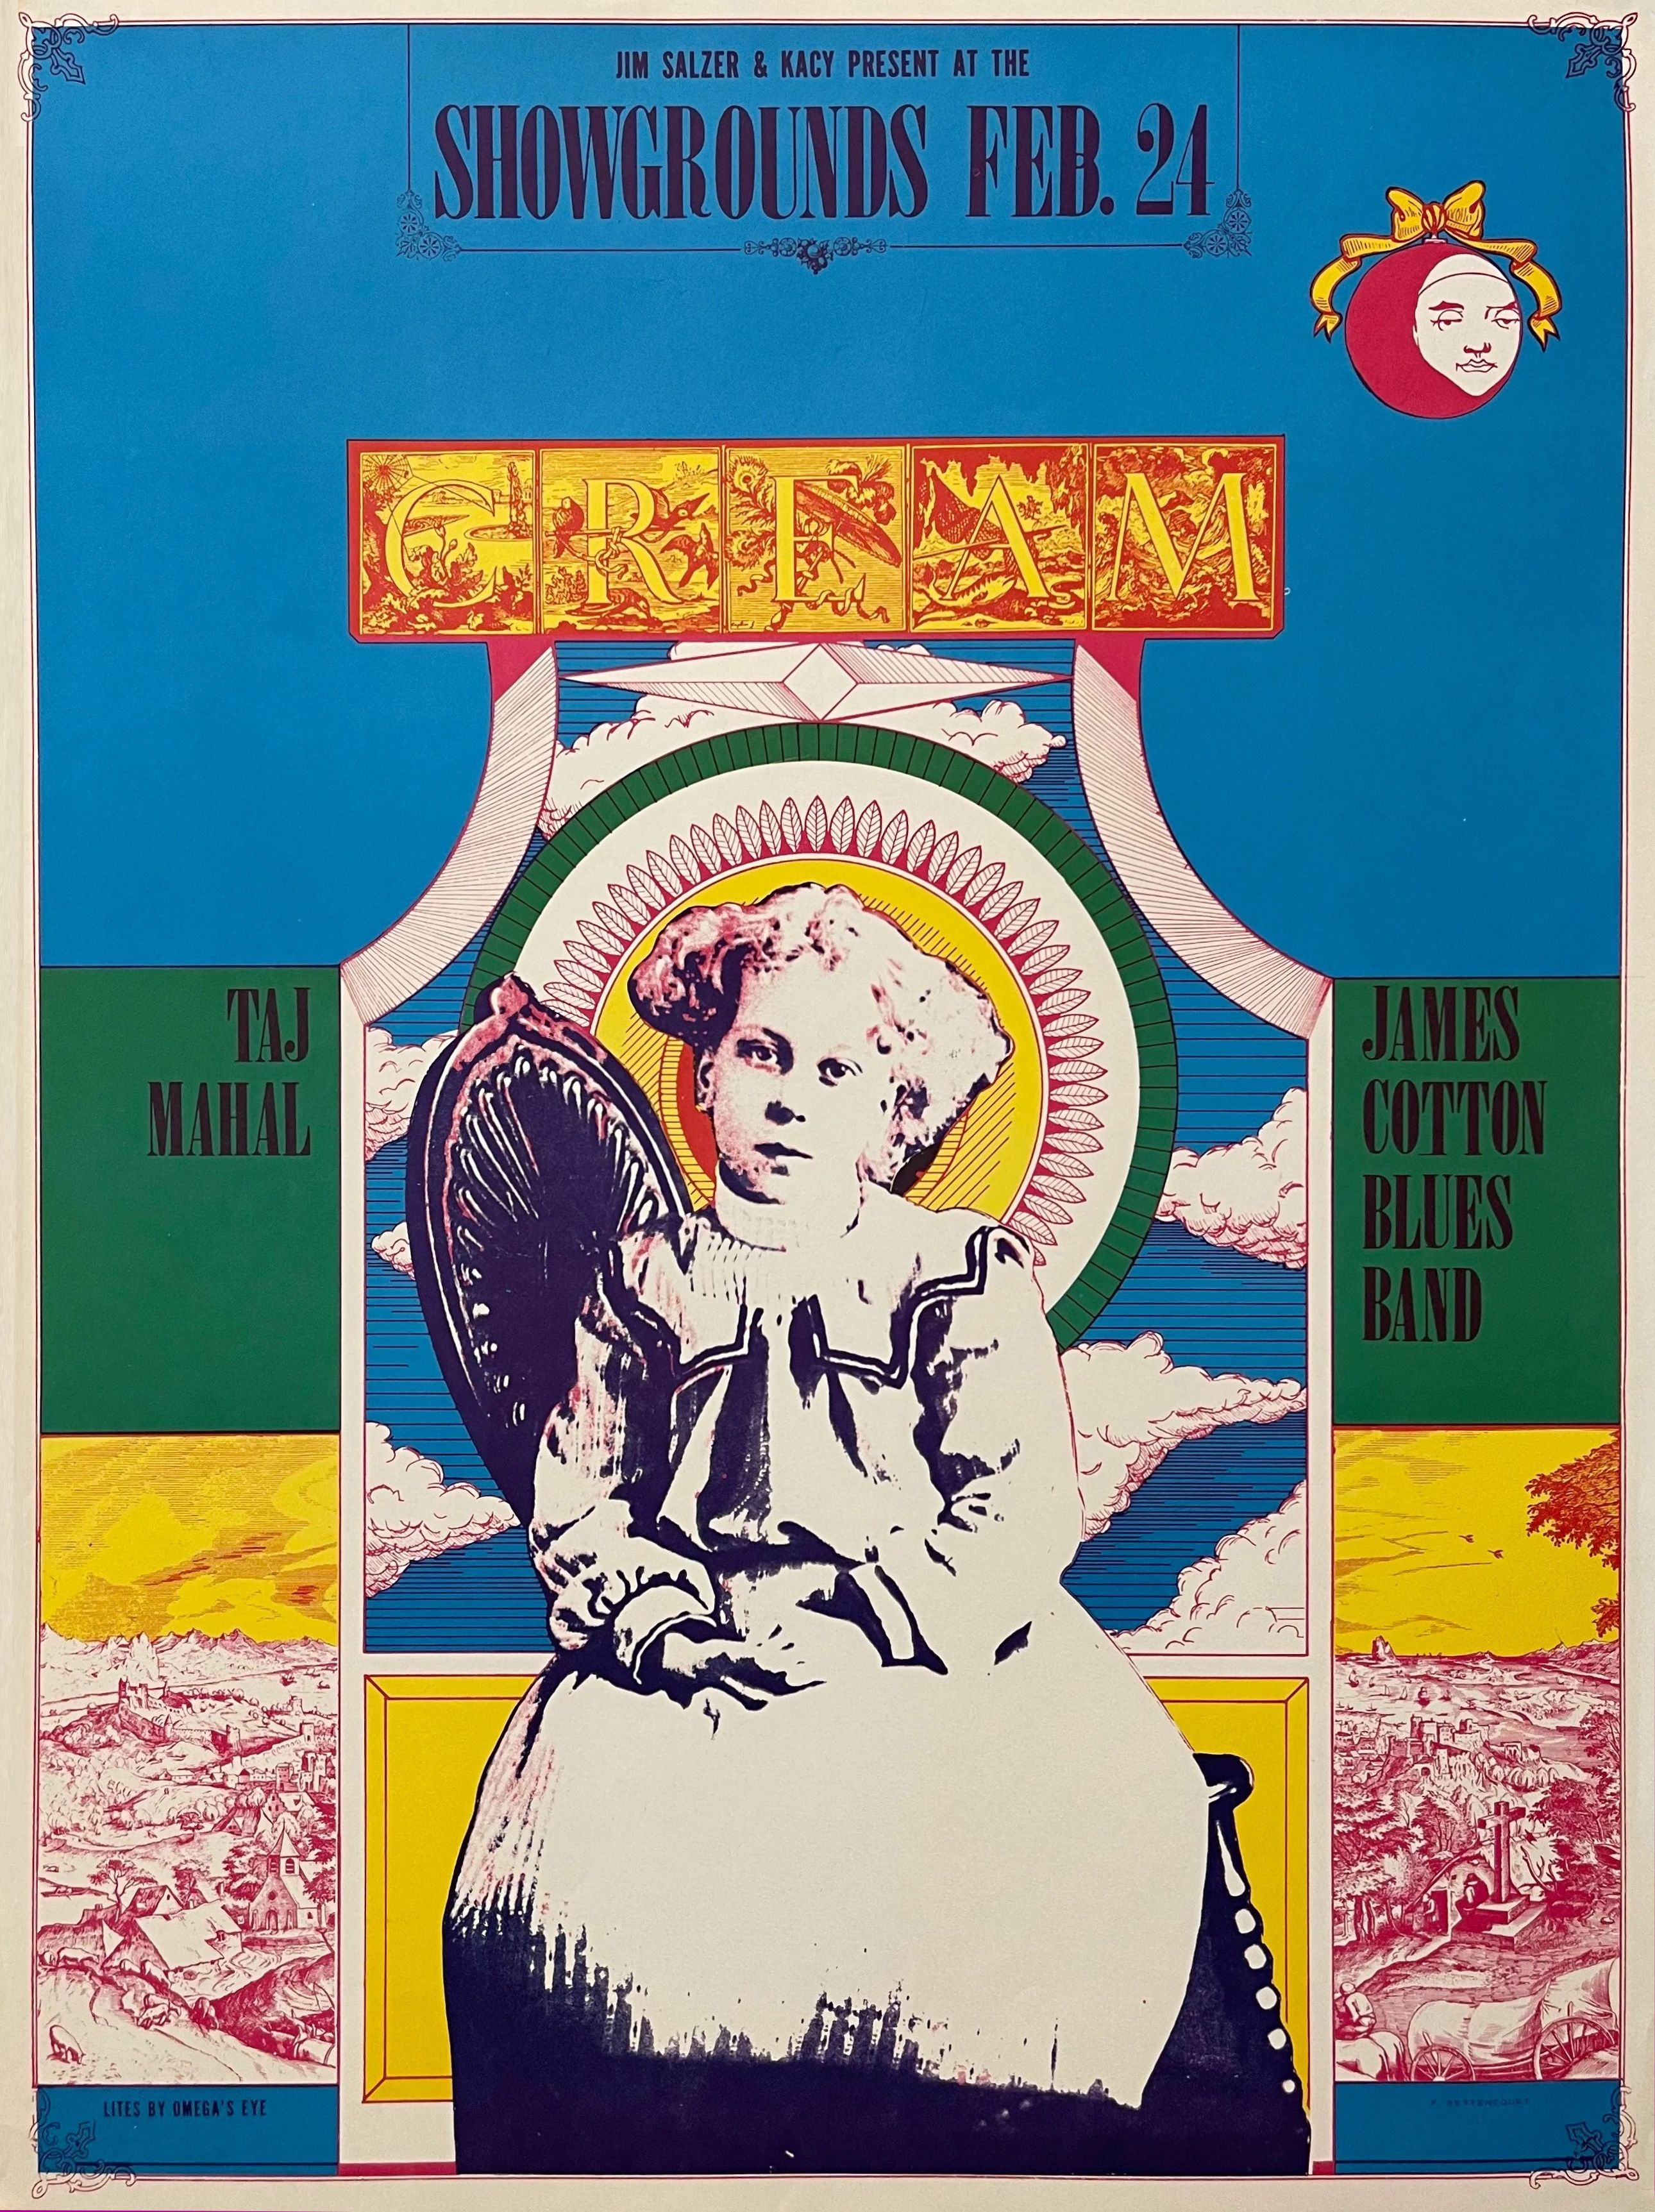 Cream Earl Warren Showgrounds 1968 Concert Poster